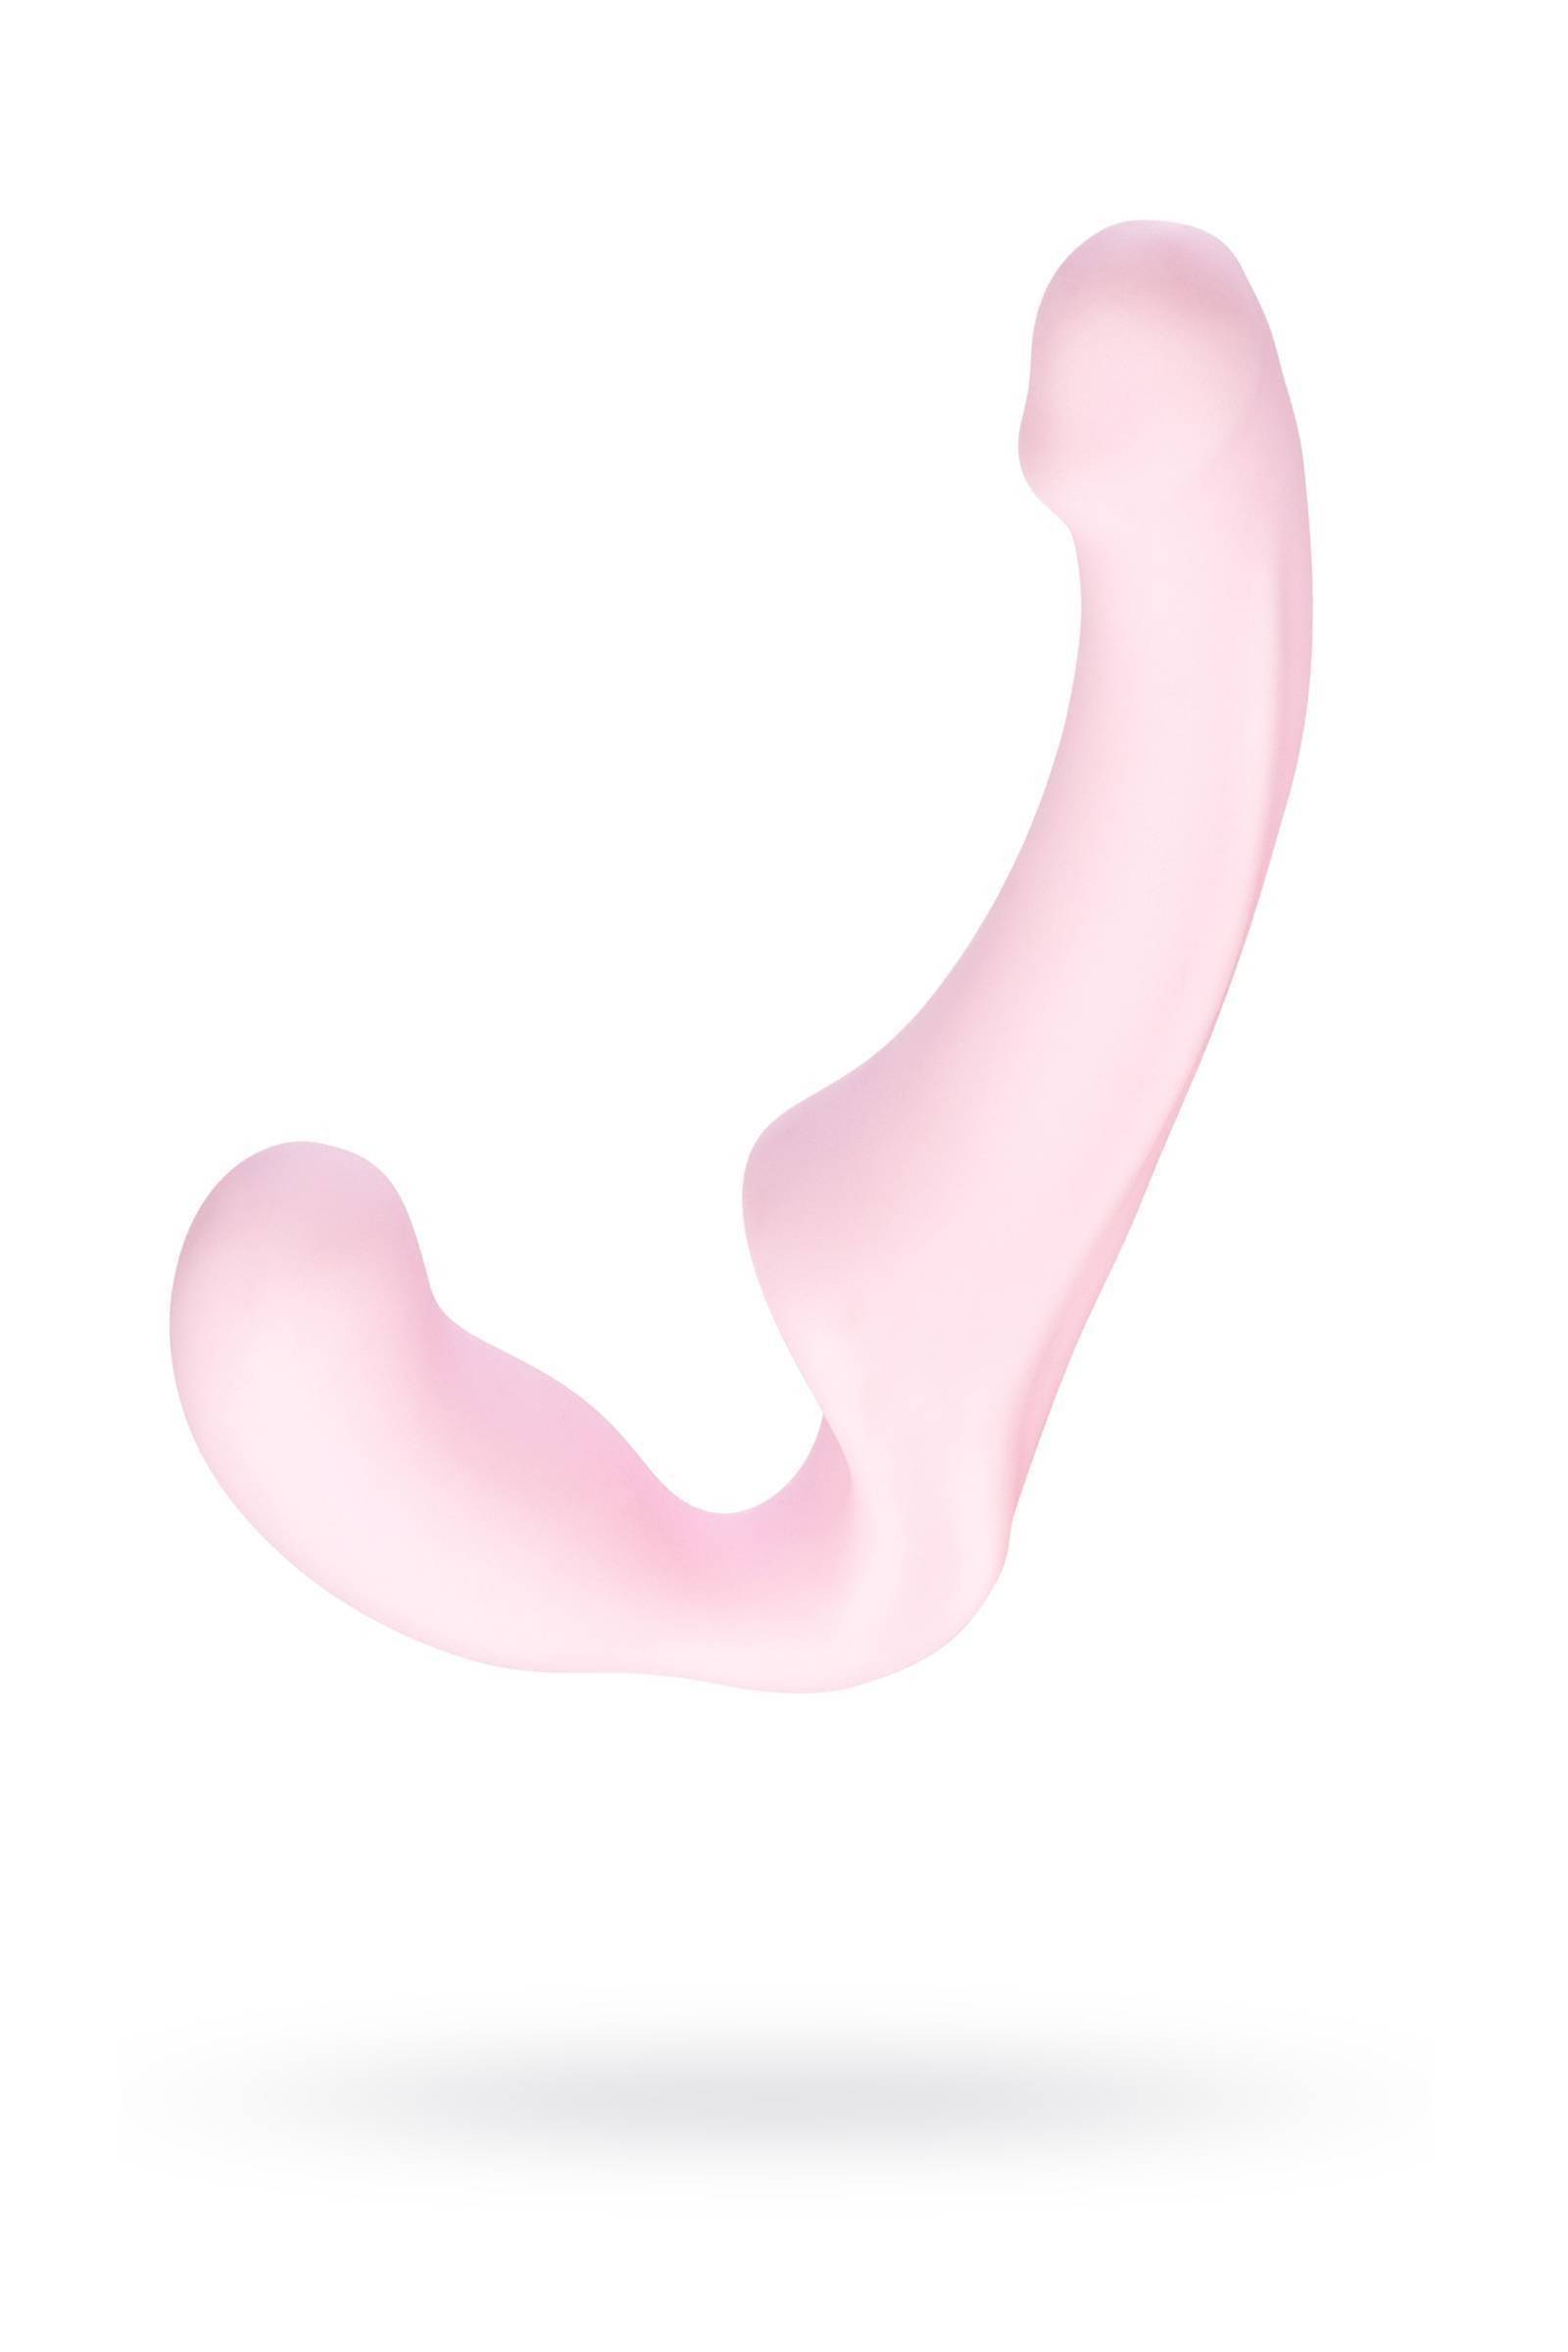 Анатомический страпон Fun Factory SHARE без ремней розовый, розовый | Fun Factory | Купить по низкой цене